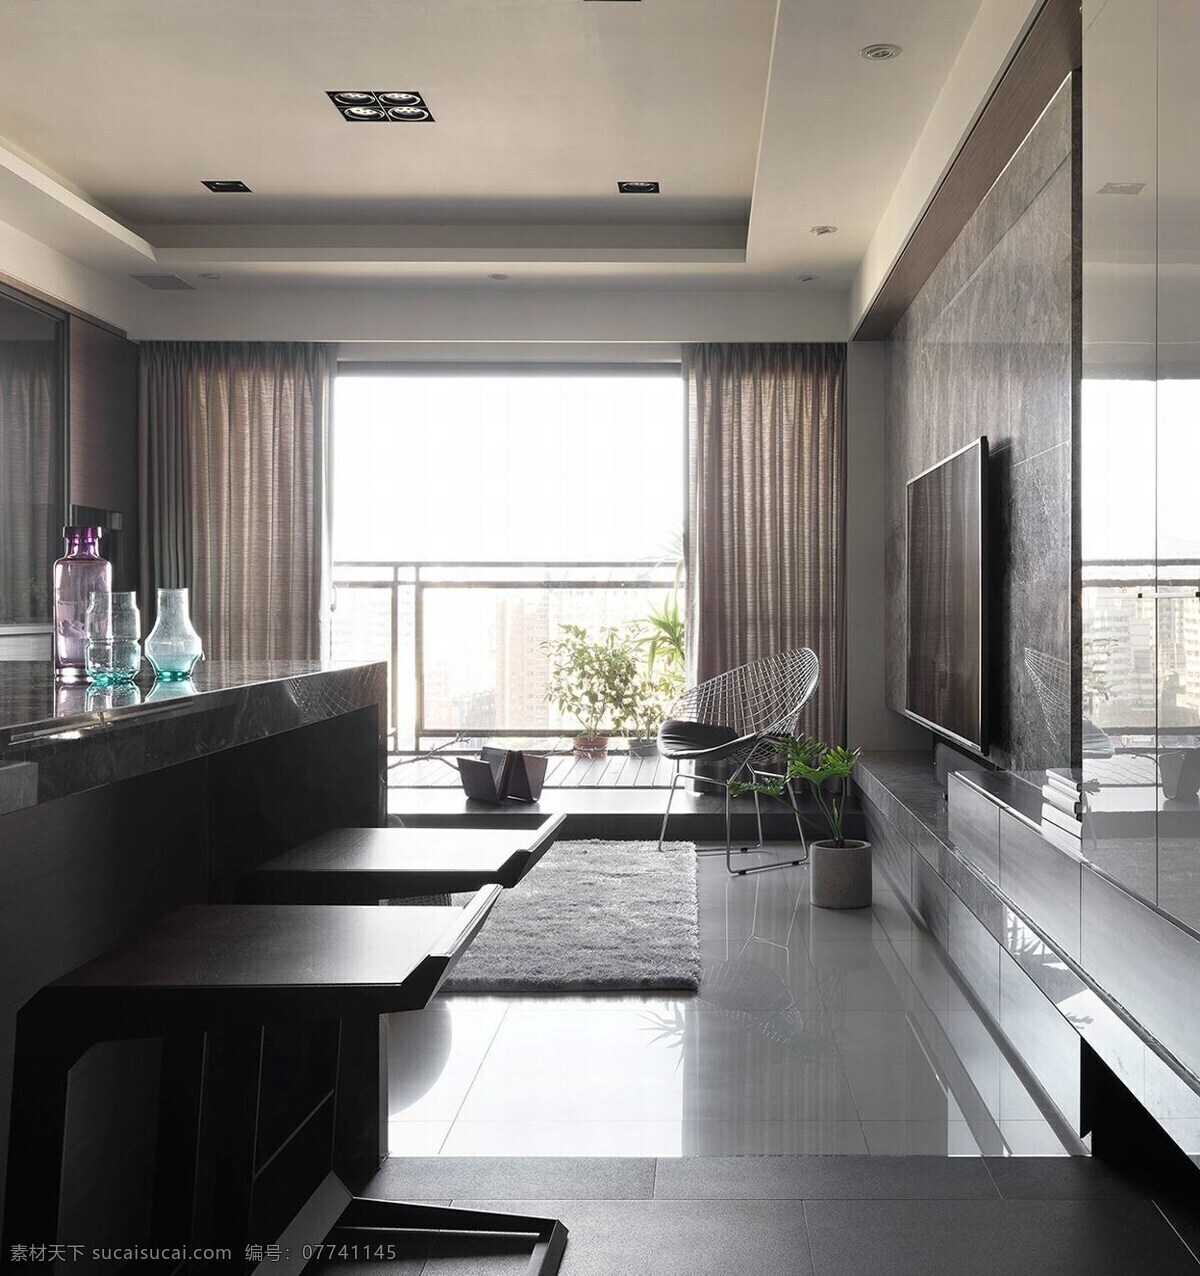 现代 时尚 客厅 深色 亮 桌子 室内装修 效果图 瓷砖地板 客厅装修 亮面背景墙 深灰色地毯